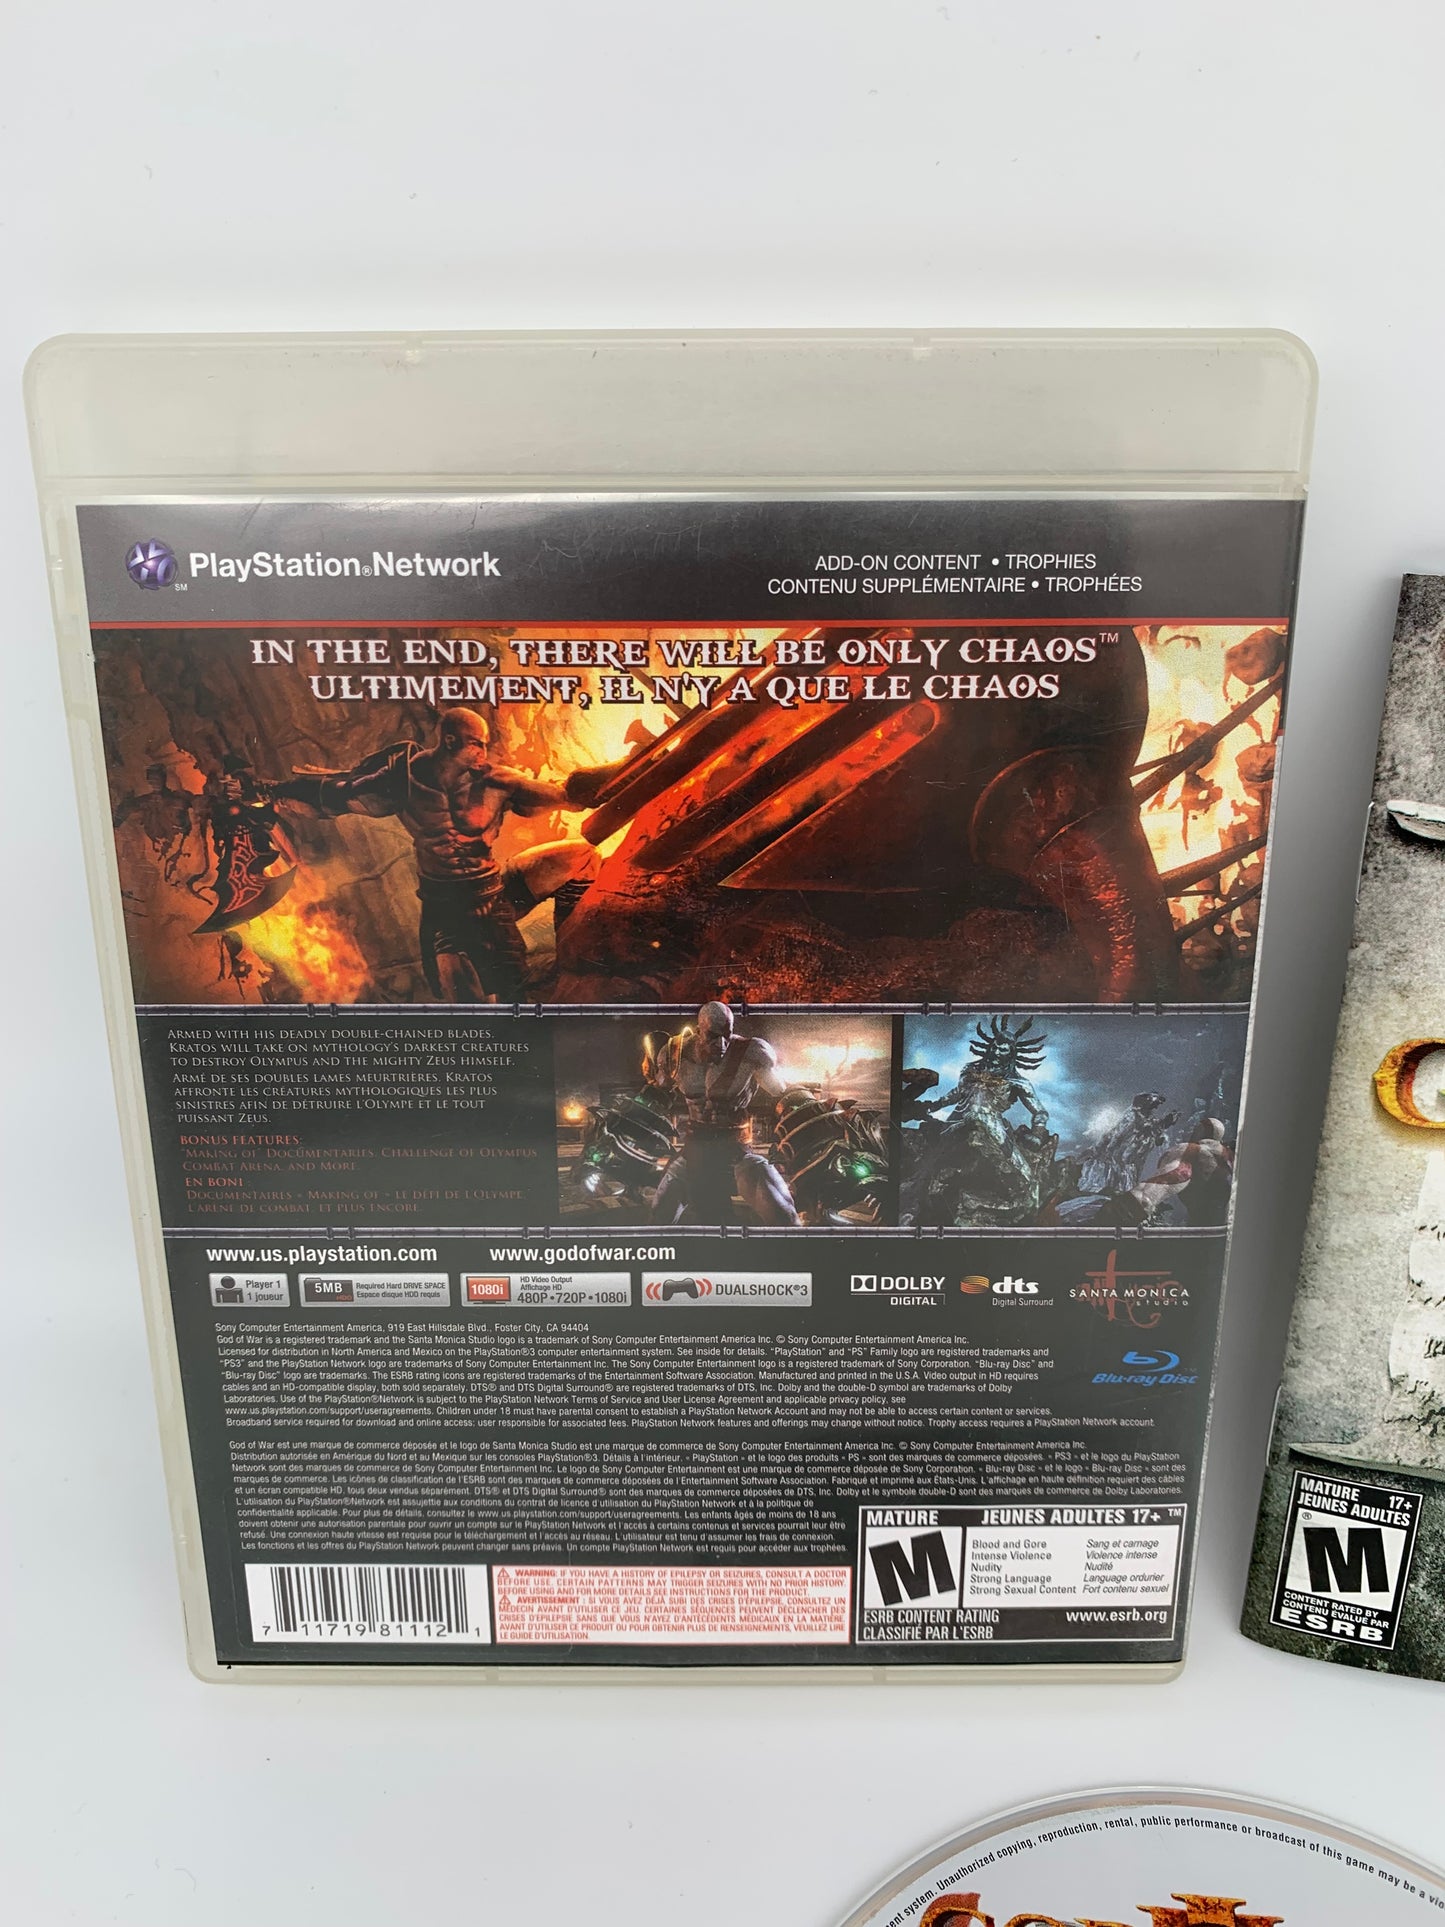 SONY PLAYSTATiON 3 [PS3] | GOD OF WAR III